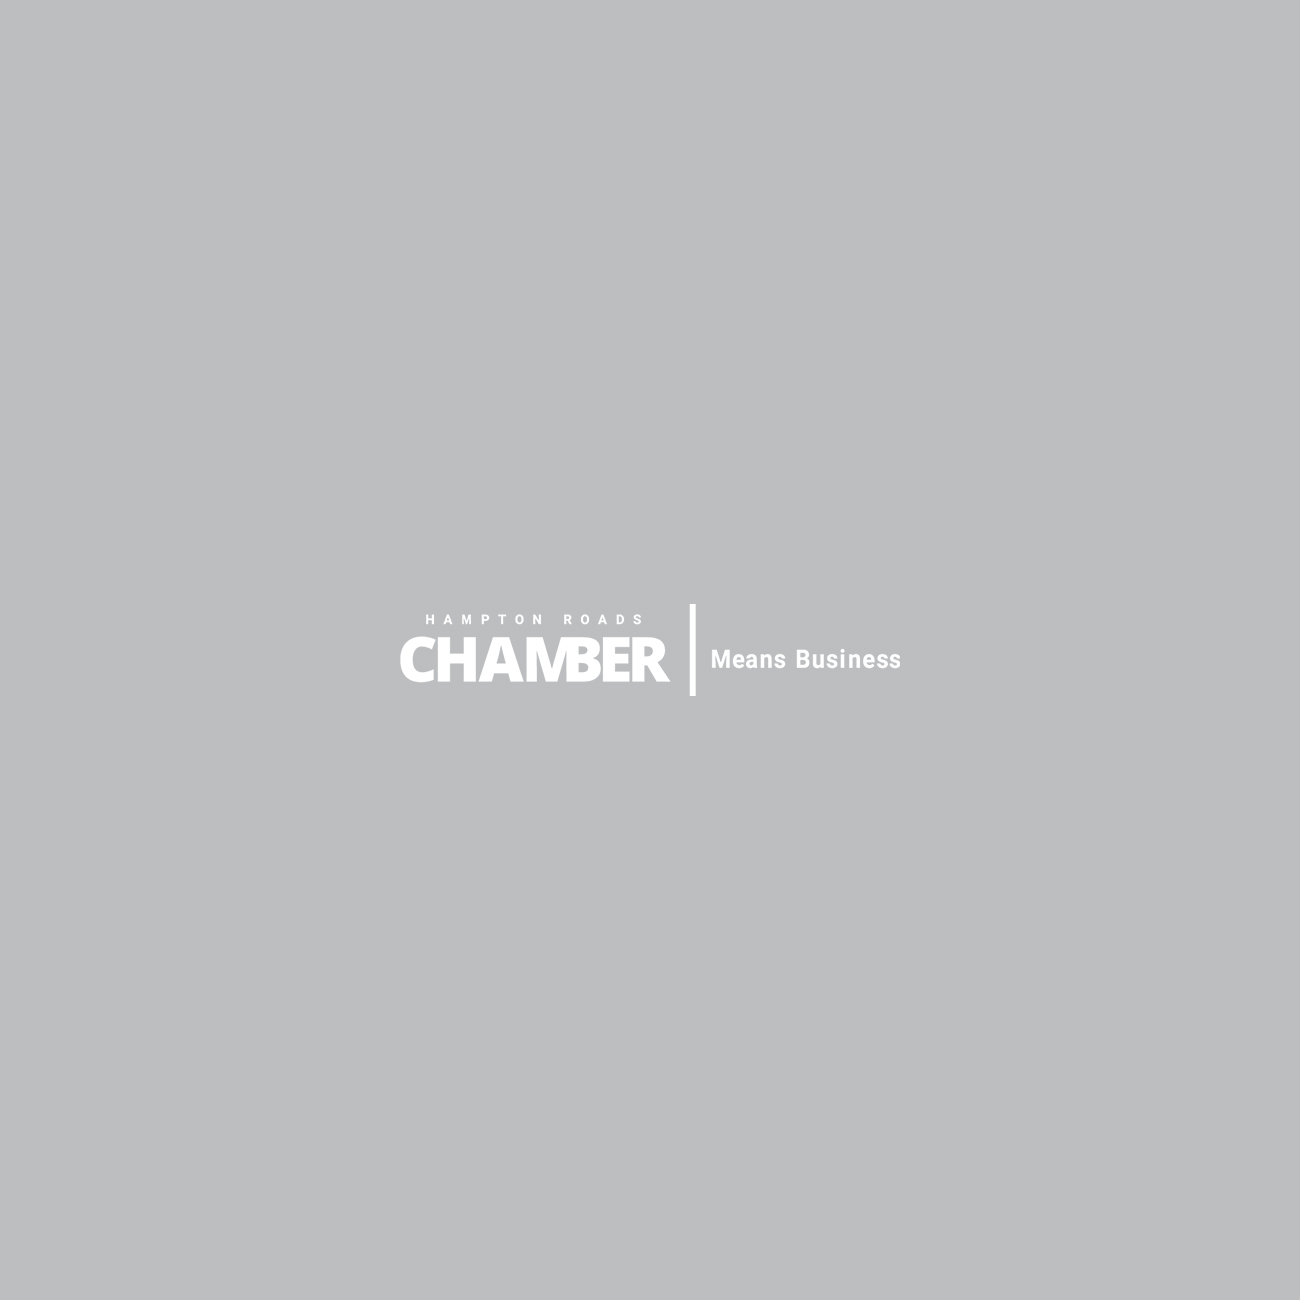 Hampton Roads Chamber